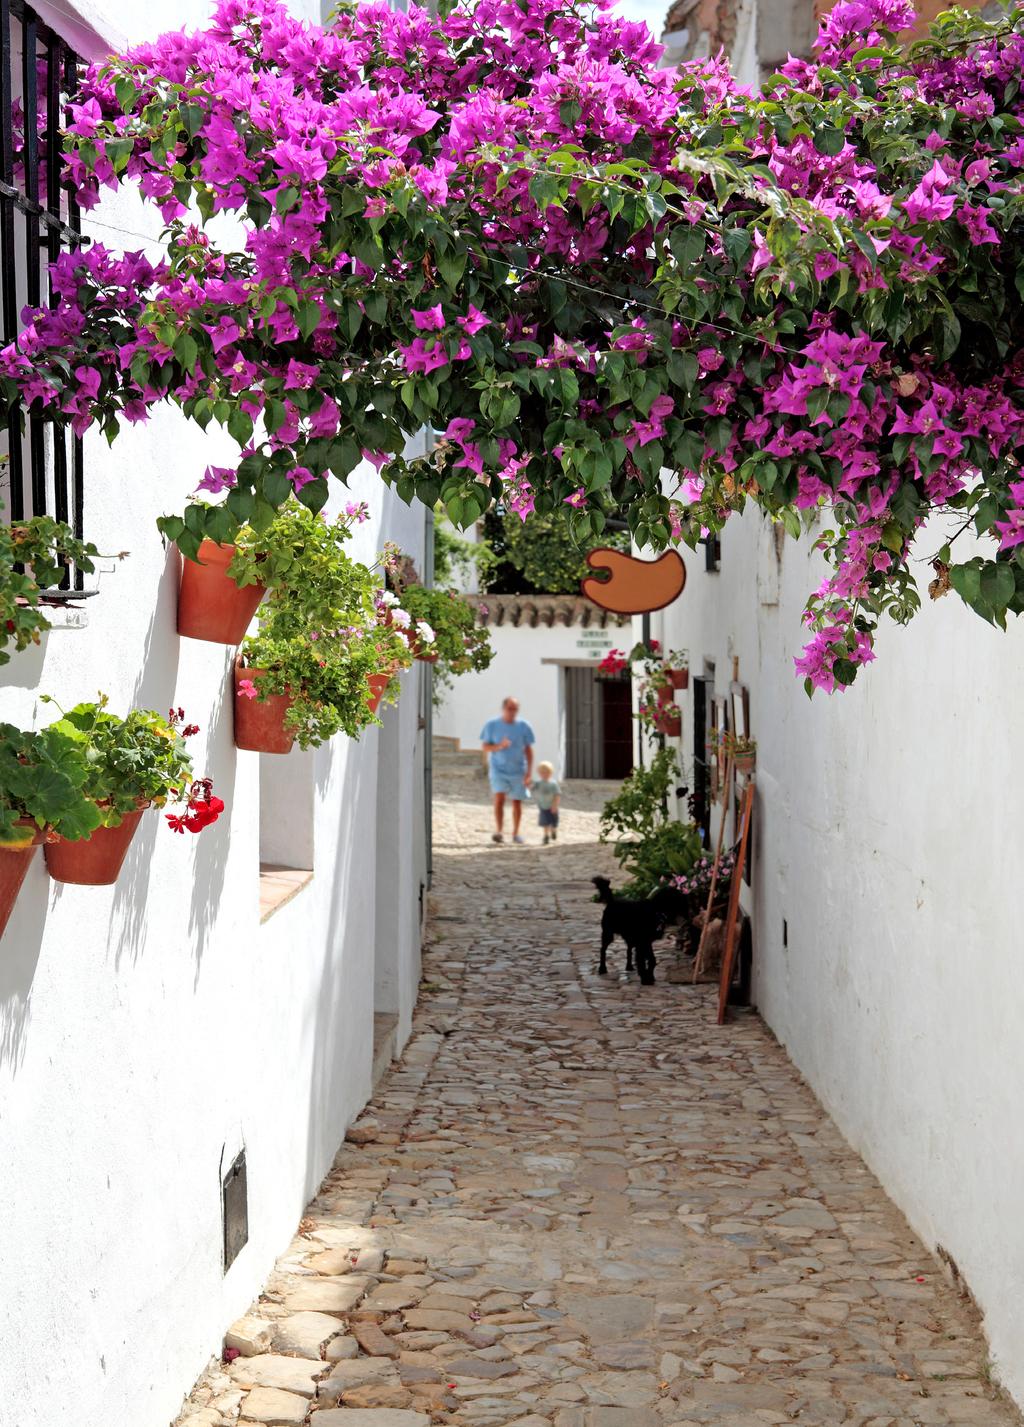 Sol och lata dagar i Andalusien NYHET! Passa på att boka en mycket prisvärd sol- och badresa till Almuñecar i södra Spanien.